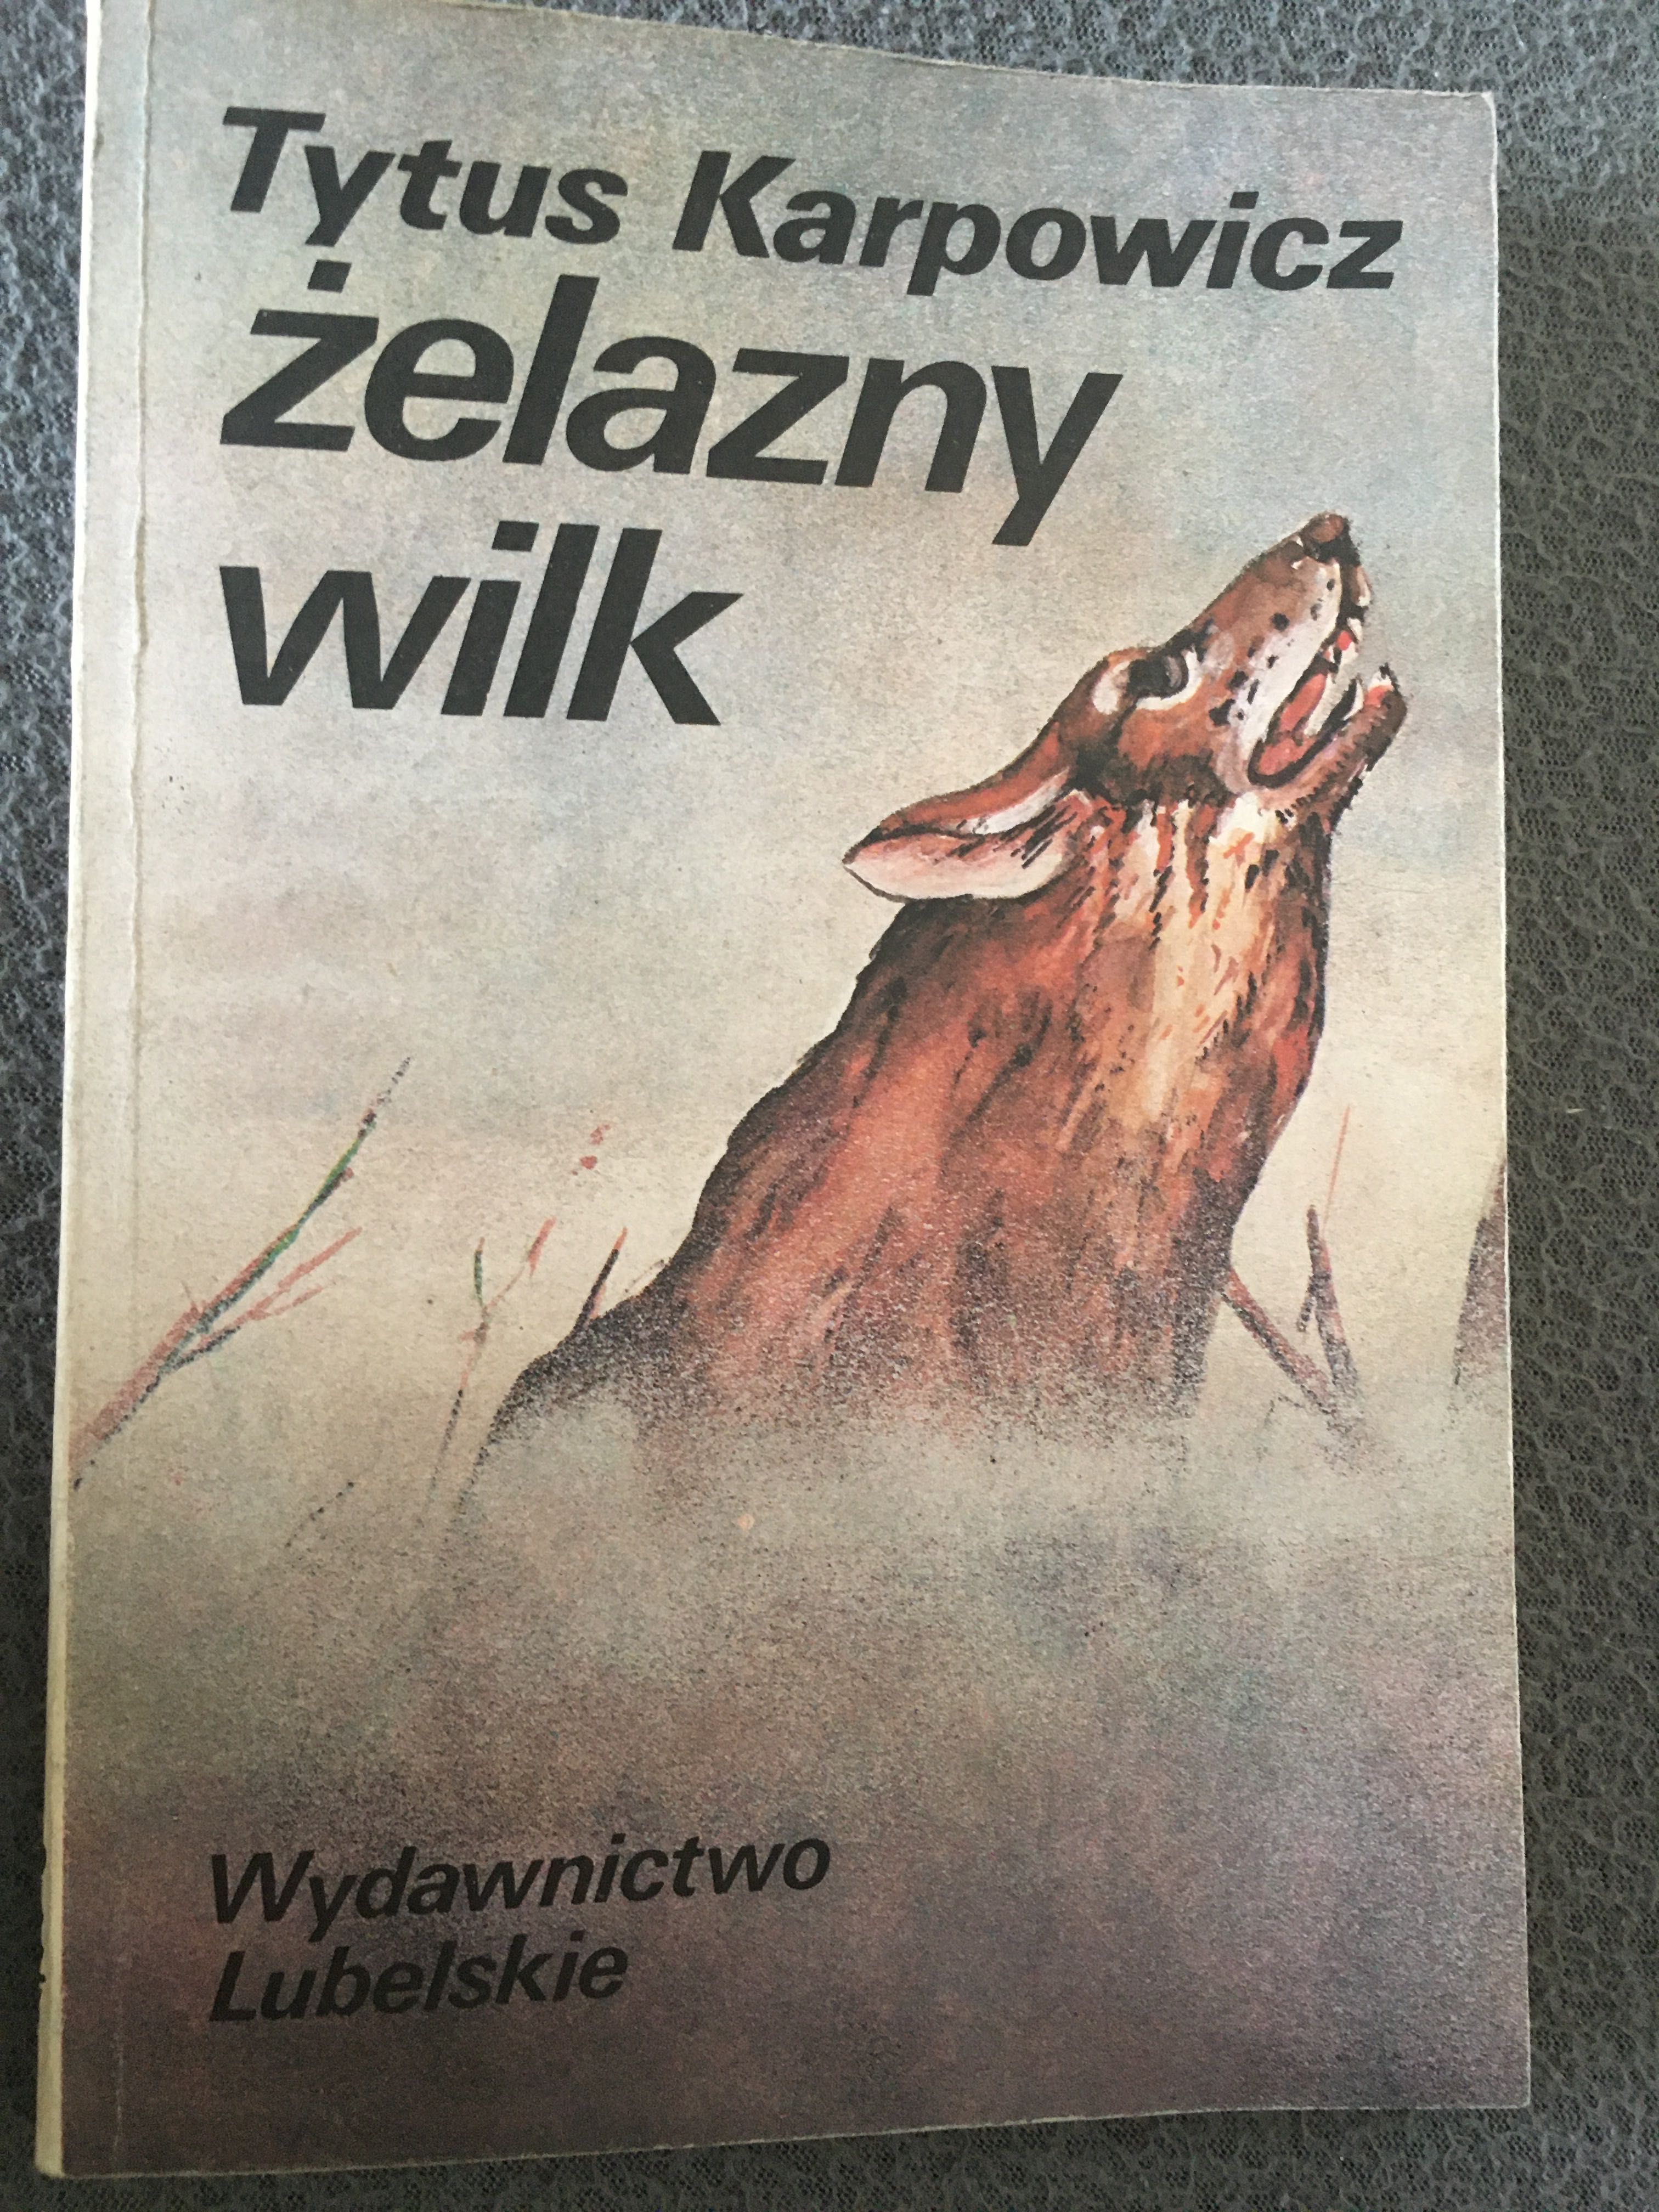 Żelazny wilk Tytus Karpowicz